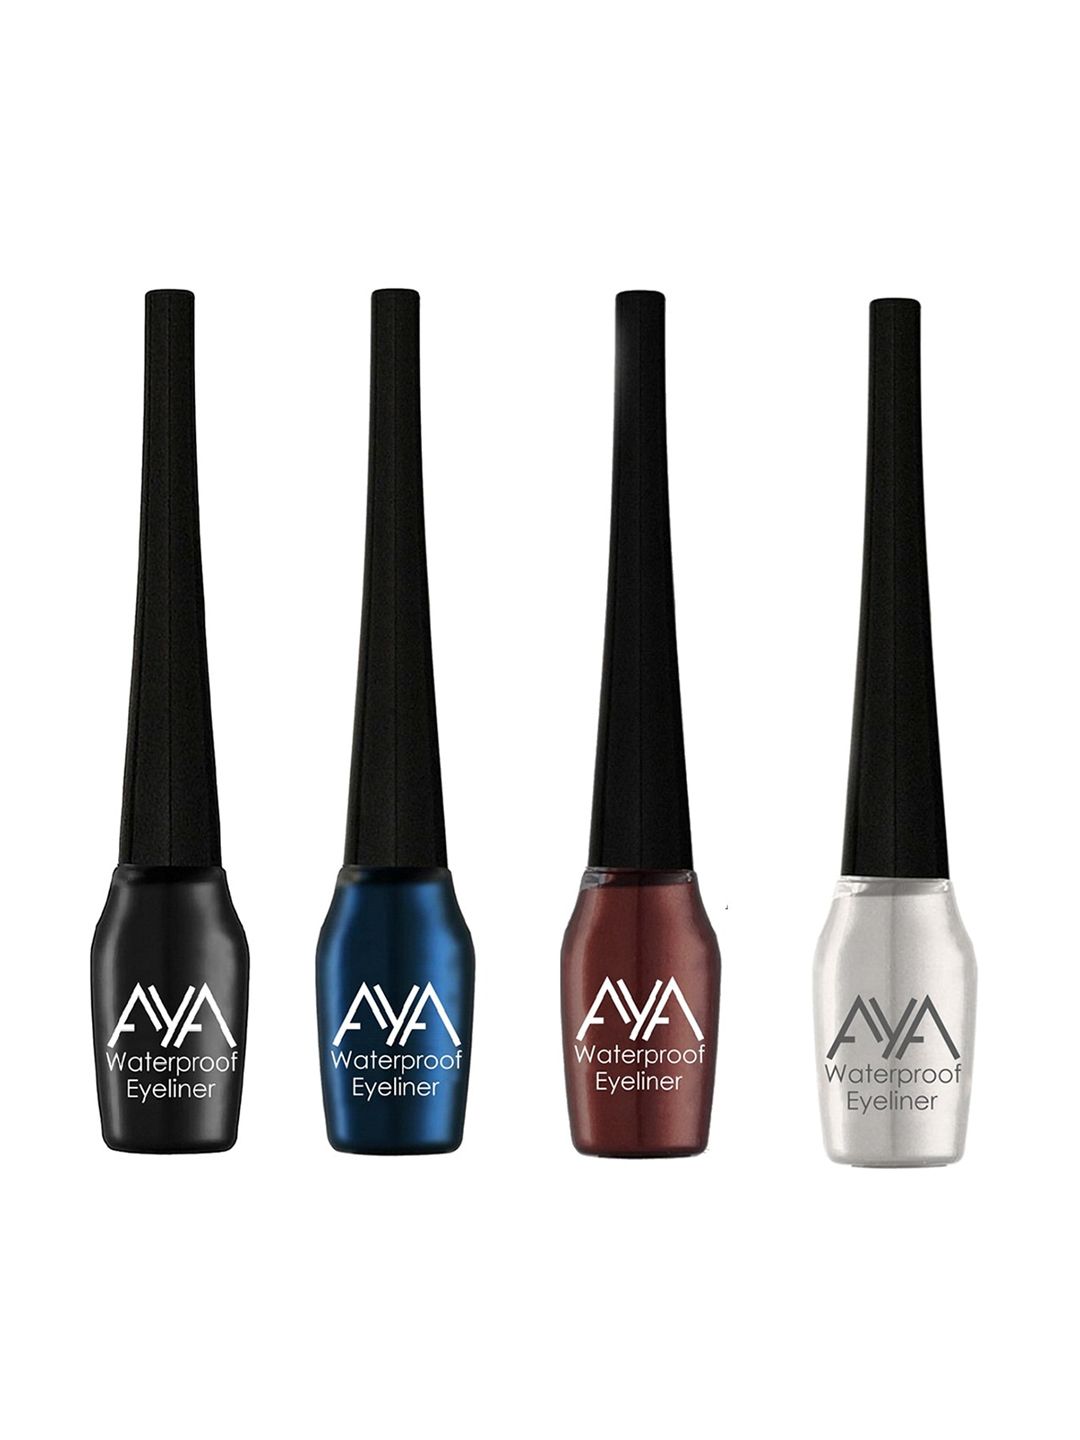 AYA Set of 4 Waterproof Eyeliners - Black - Blue - Silver- Brown 5ml each Price in India